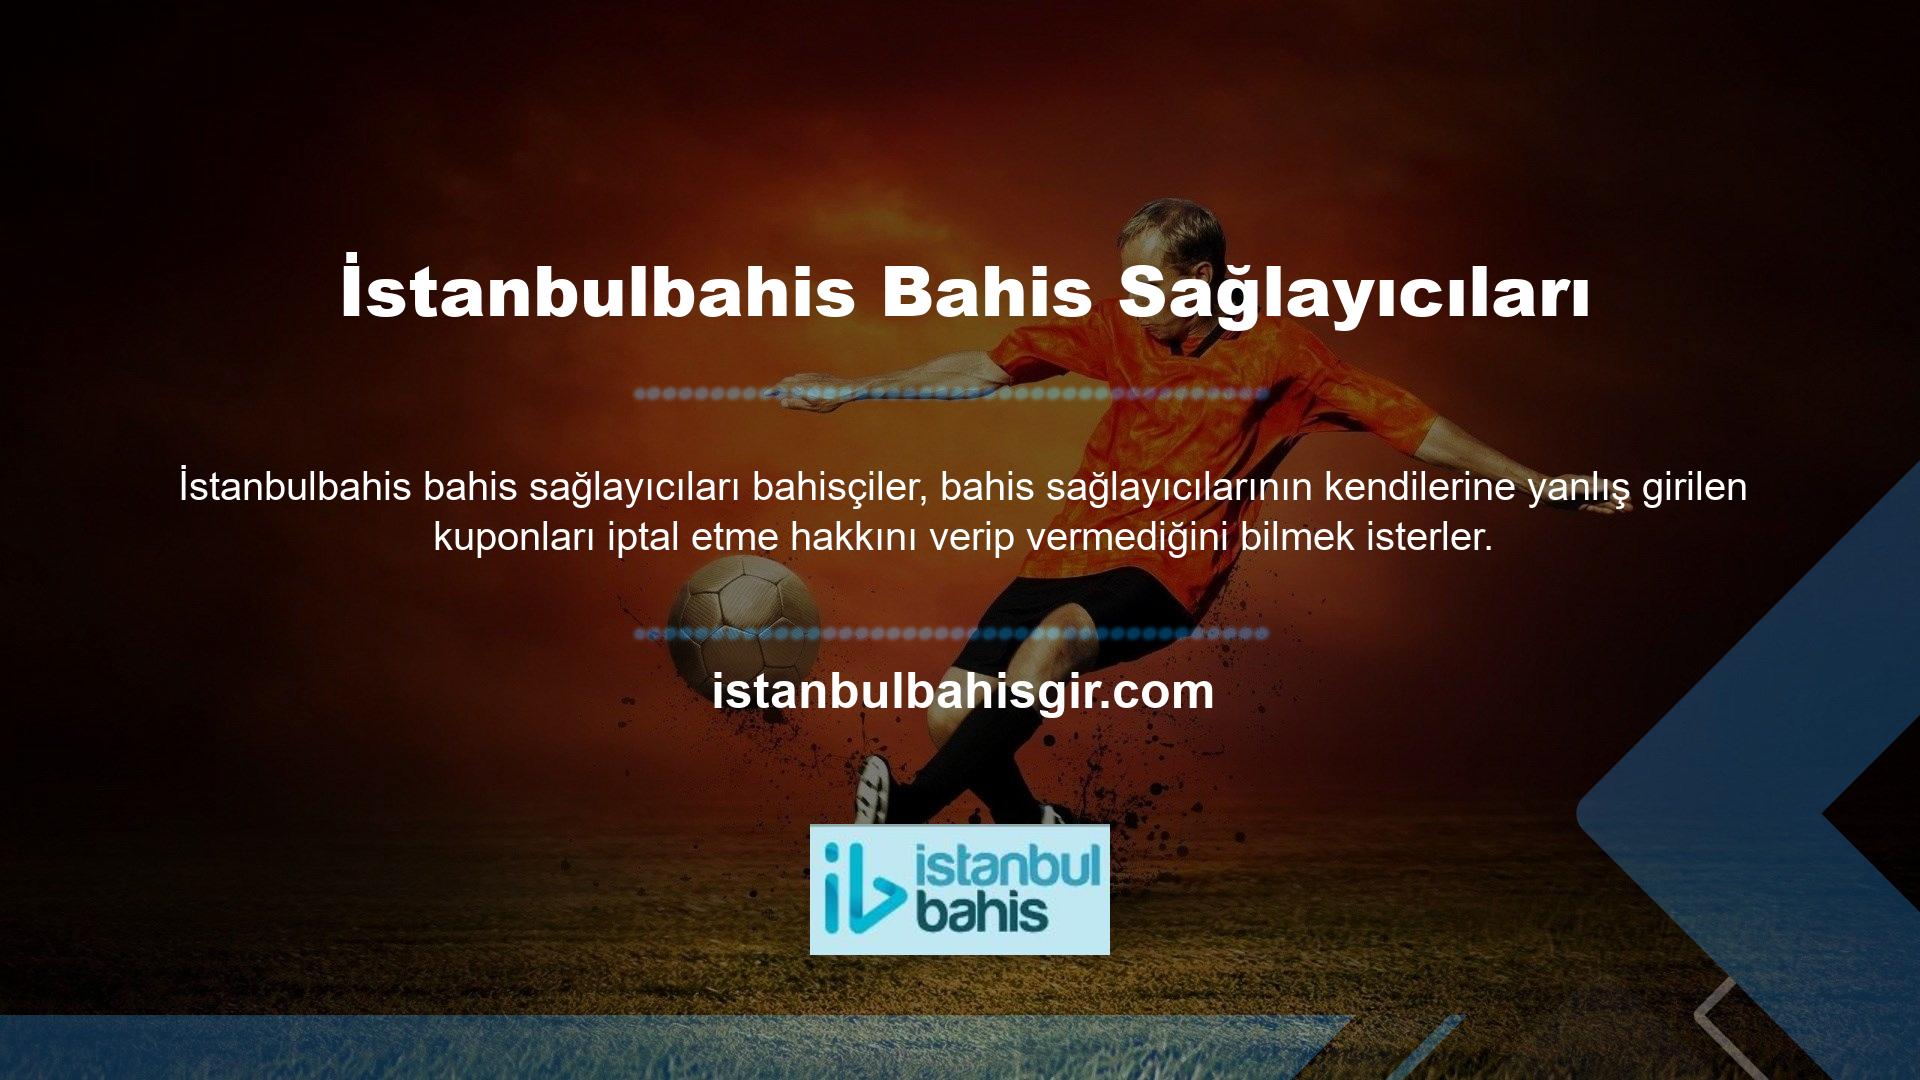 İstanbulbahis, sanal bahis kuponu iptal özelliği ile bahisçilere hatalı işaretlenmiş kuponları oyun başlayana kadar koşulsuz olarak iptal etme olanağı sunmaktadır